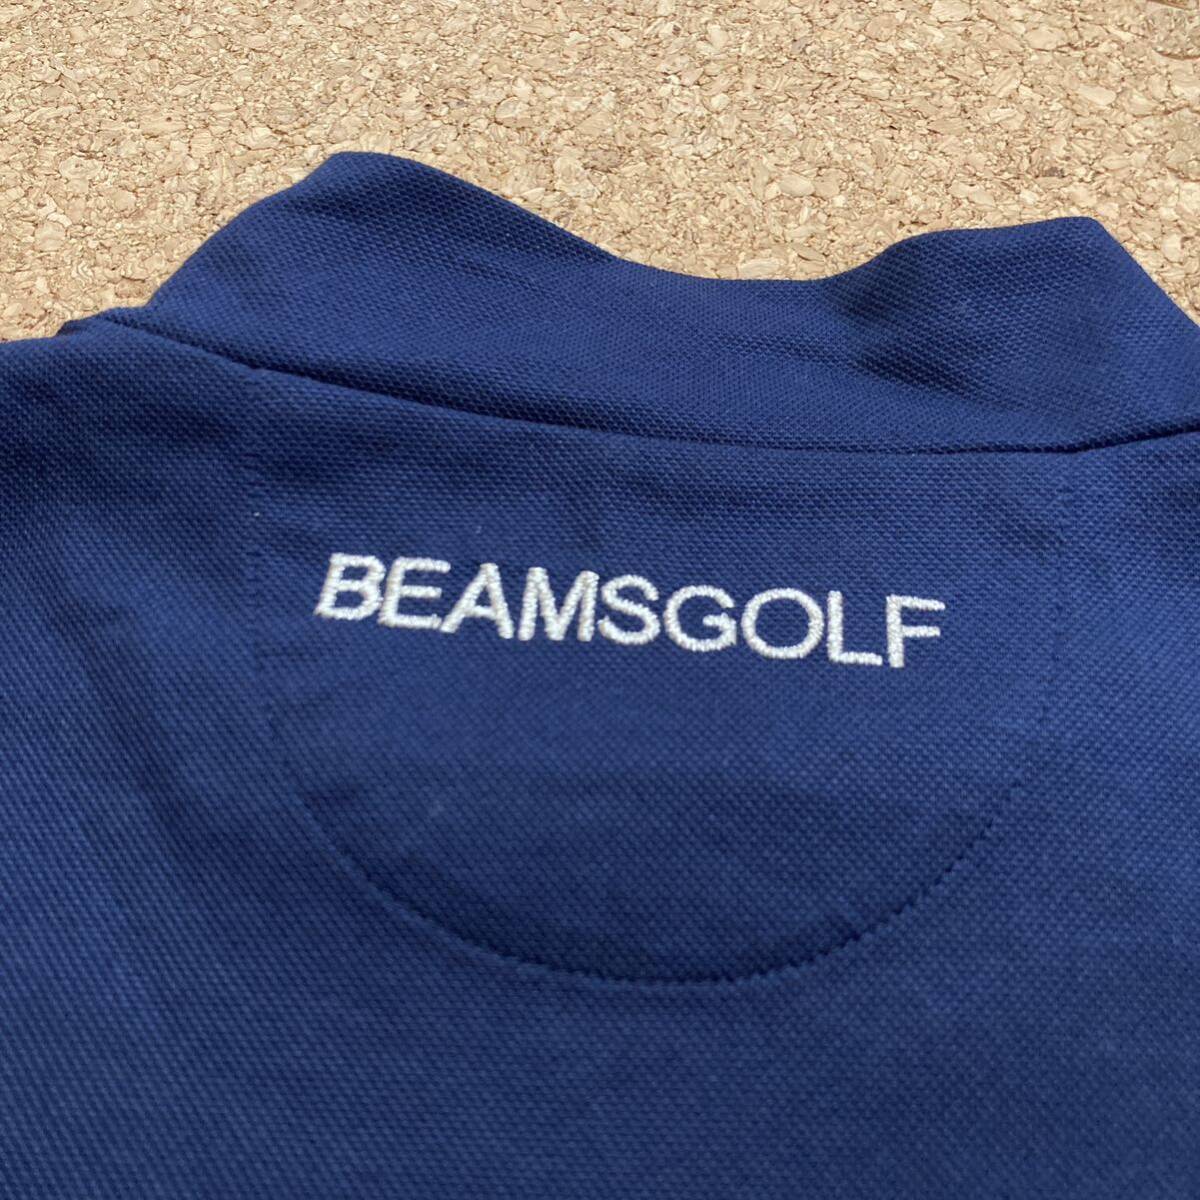 【未使用】ビームスゴルフ BEAMSGOLF ハイネック ネックモック タートル 半袖シャツ 半袖 ゴルフウェア GOLF golf ゴルフ Mレディース 紺